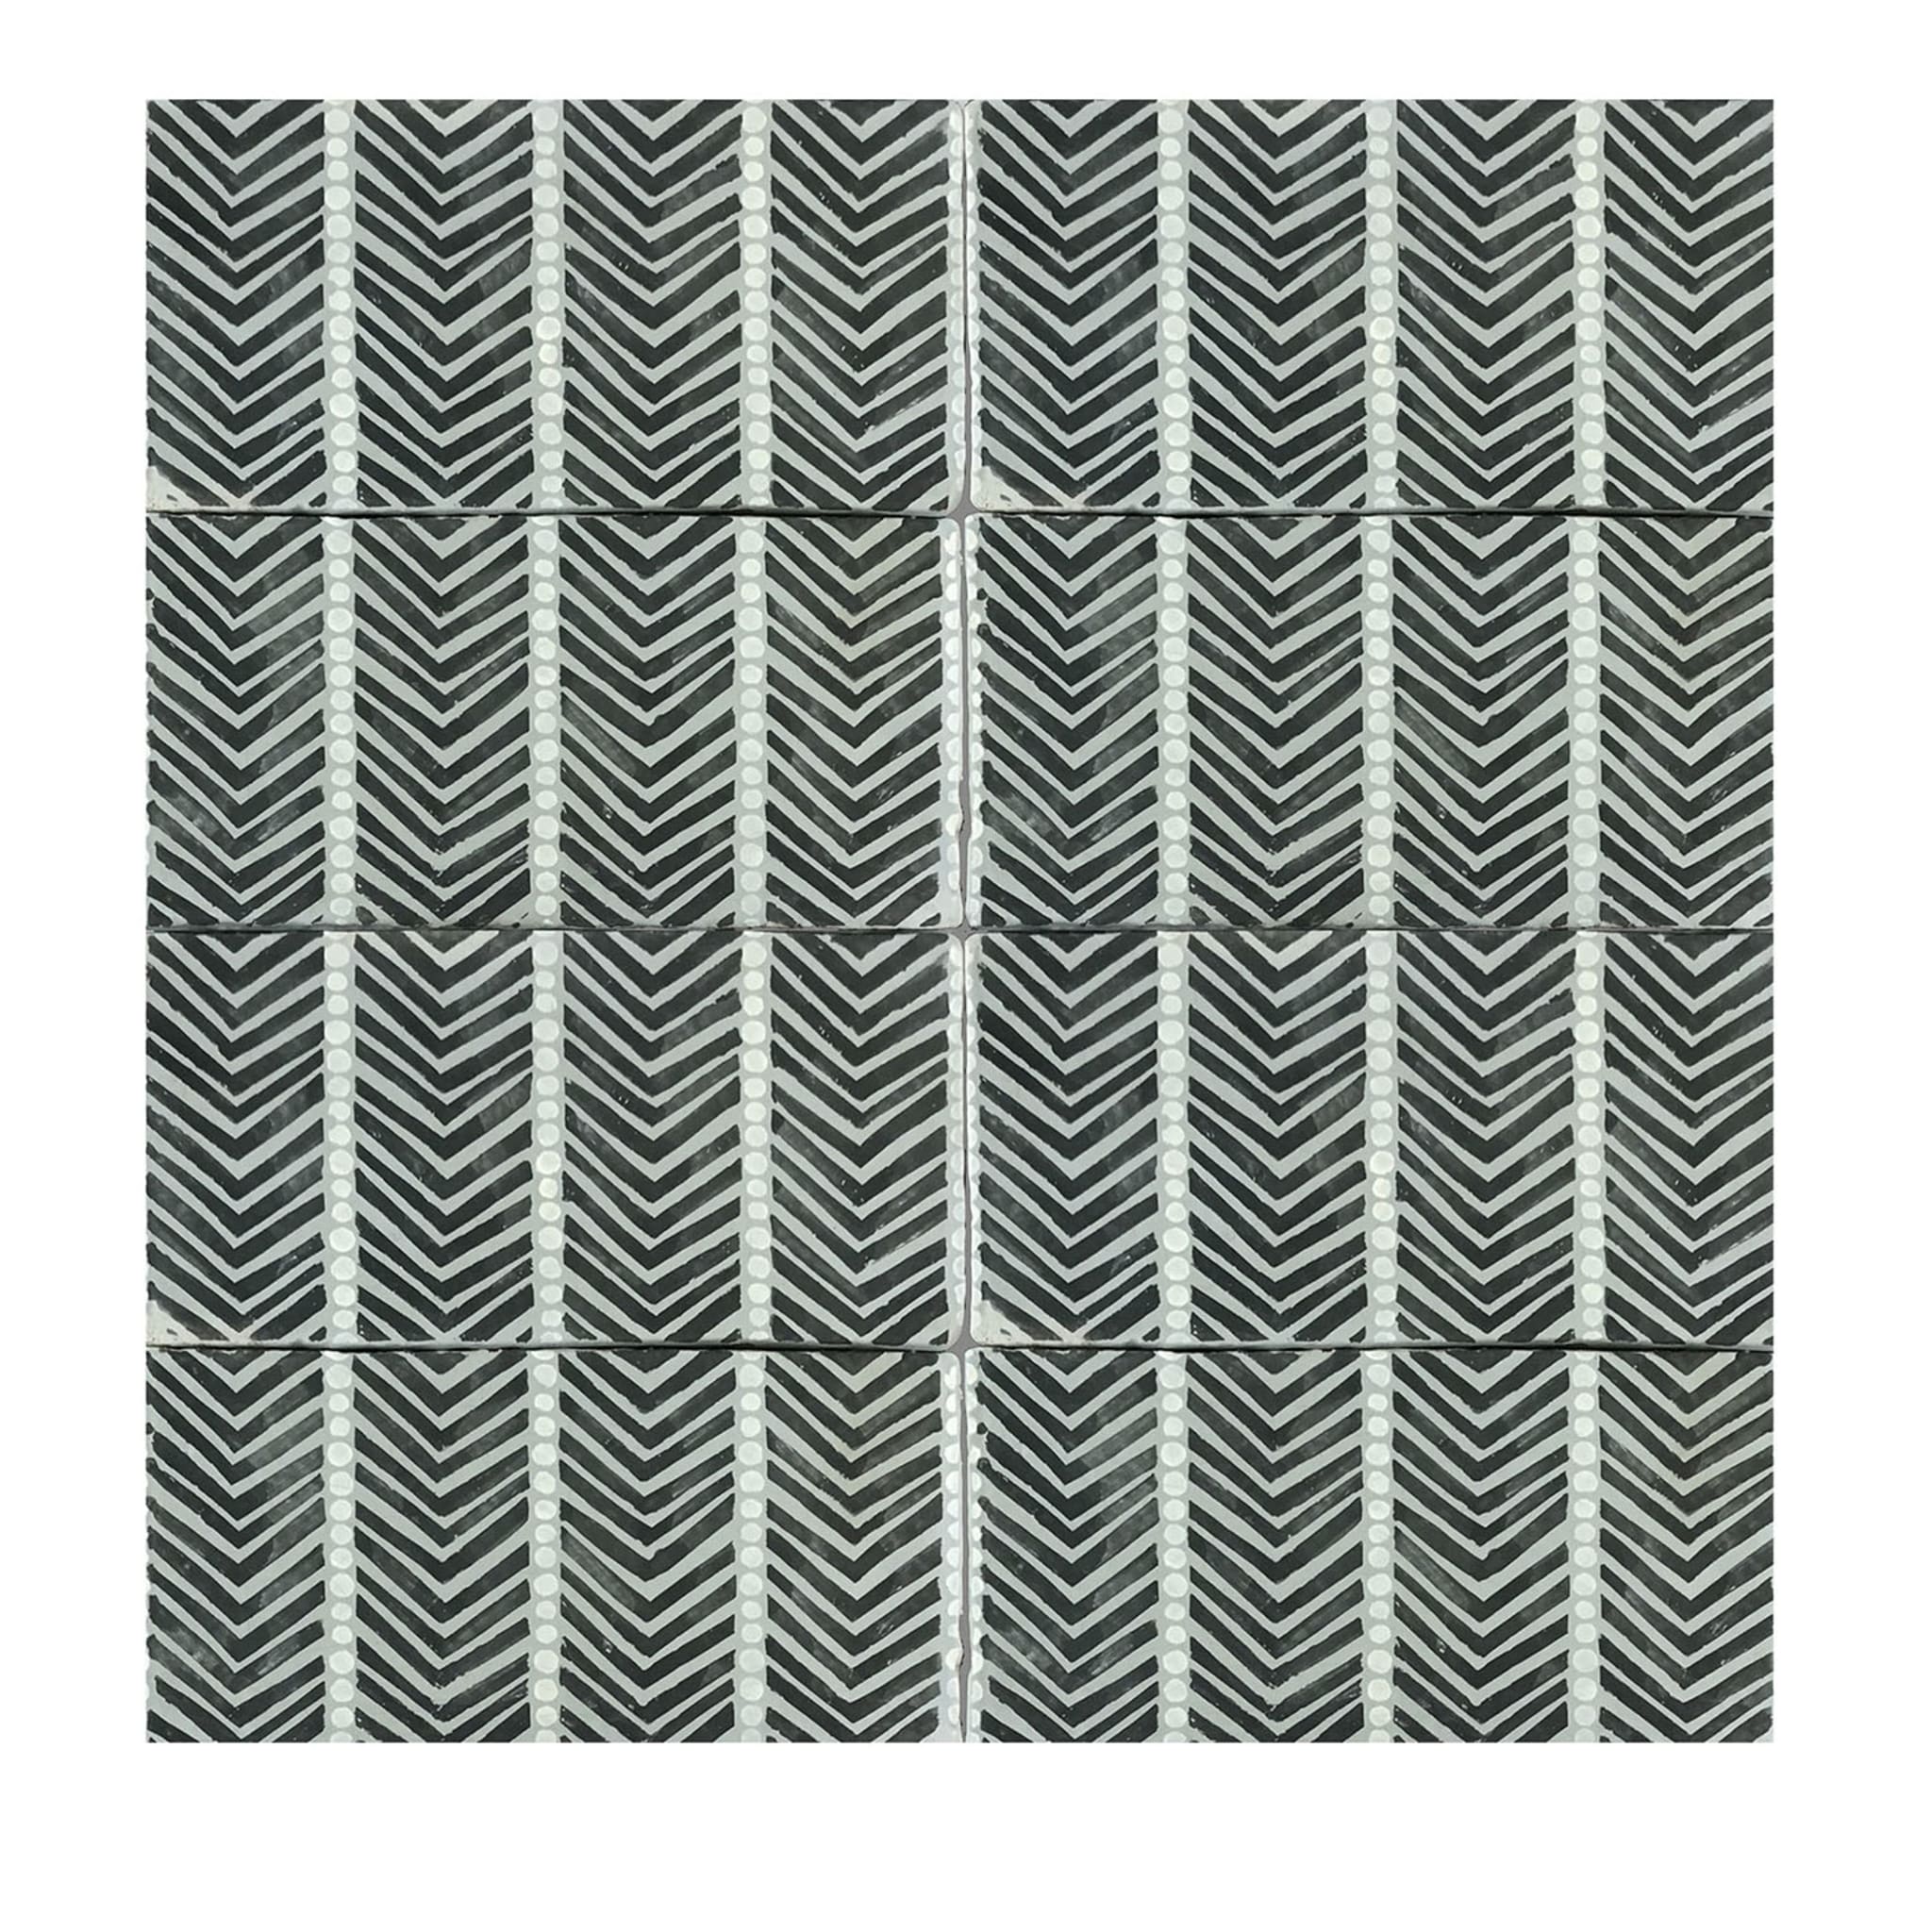 Daamè Set of 50 Rectangular Gray Tiles #1 - Main view